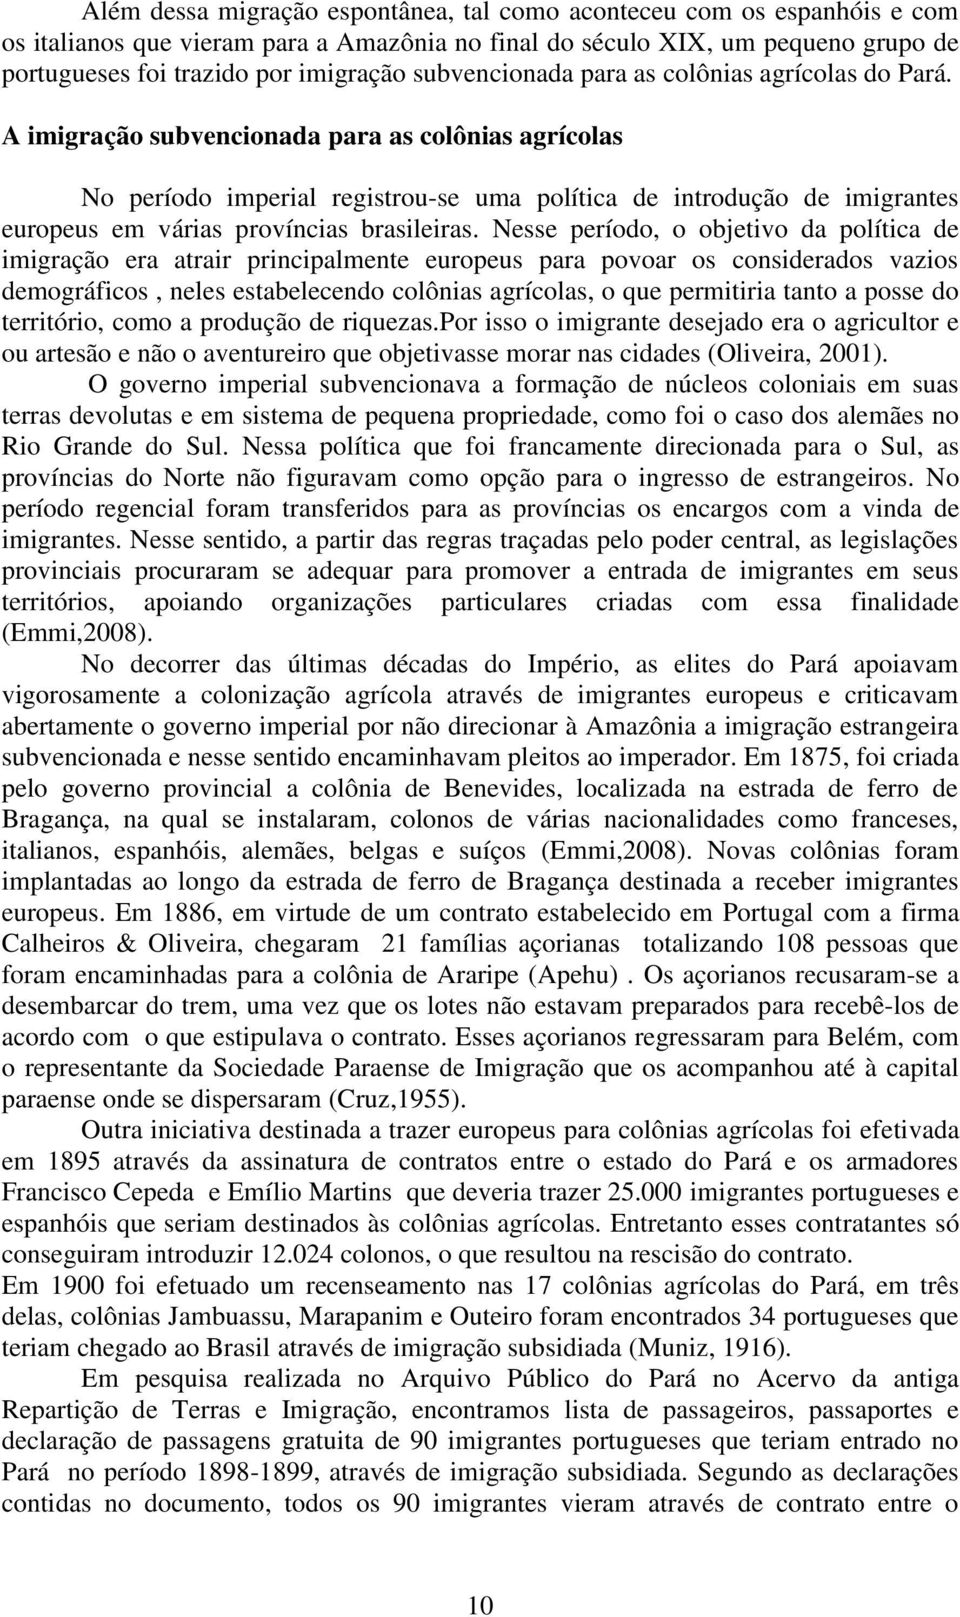 A imigração subvencionada para as colônias agrícolas No período imperial registrou-se uma política de introdução de imigrantes europeus em várias províncias brasileiras.